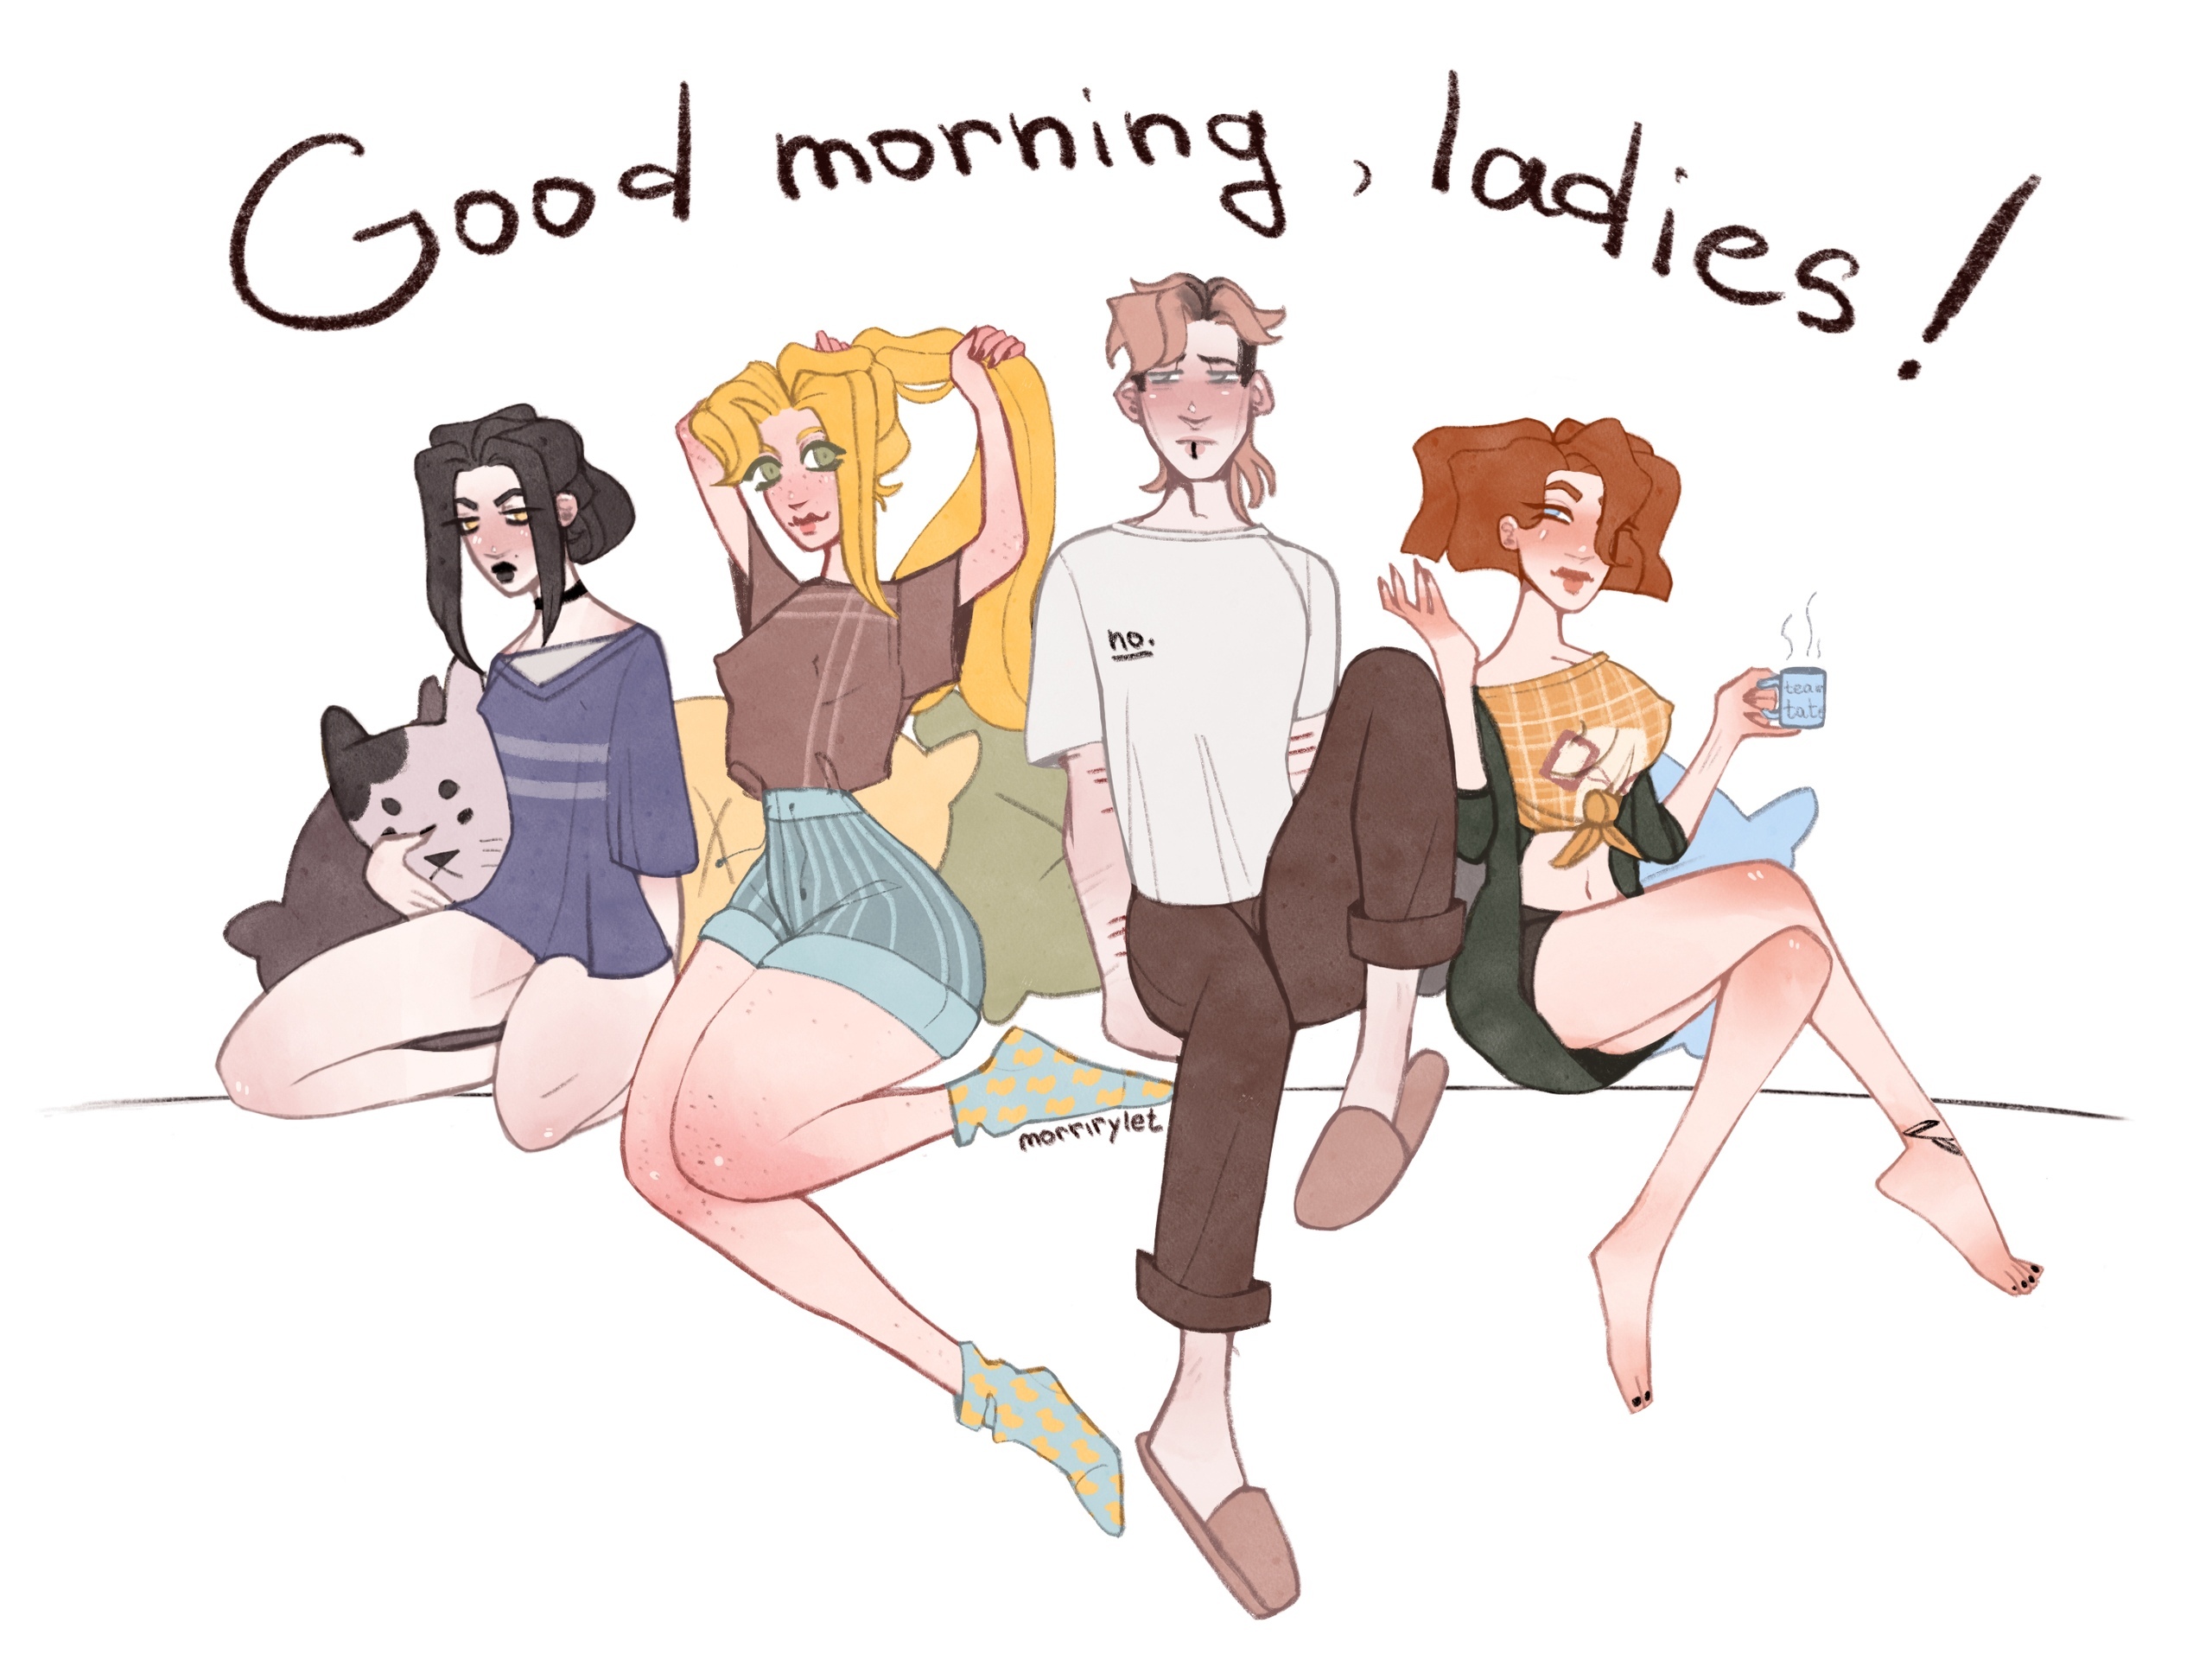 Good morning ladies